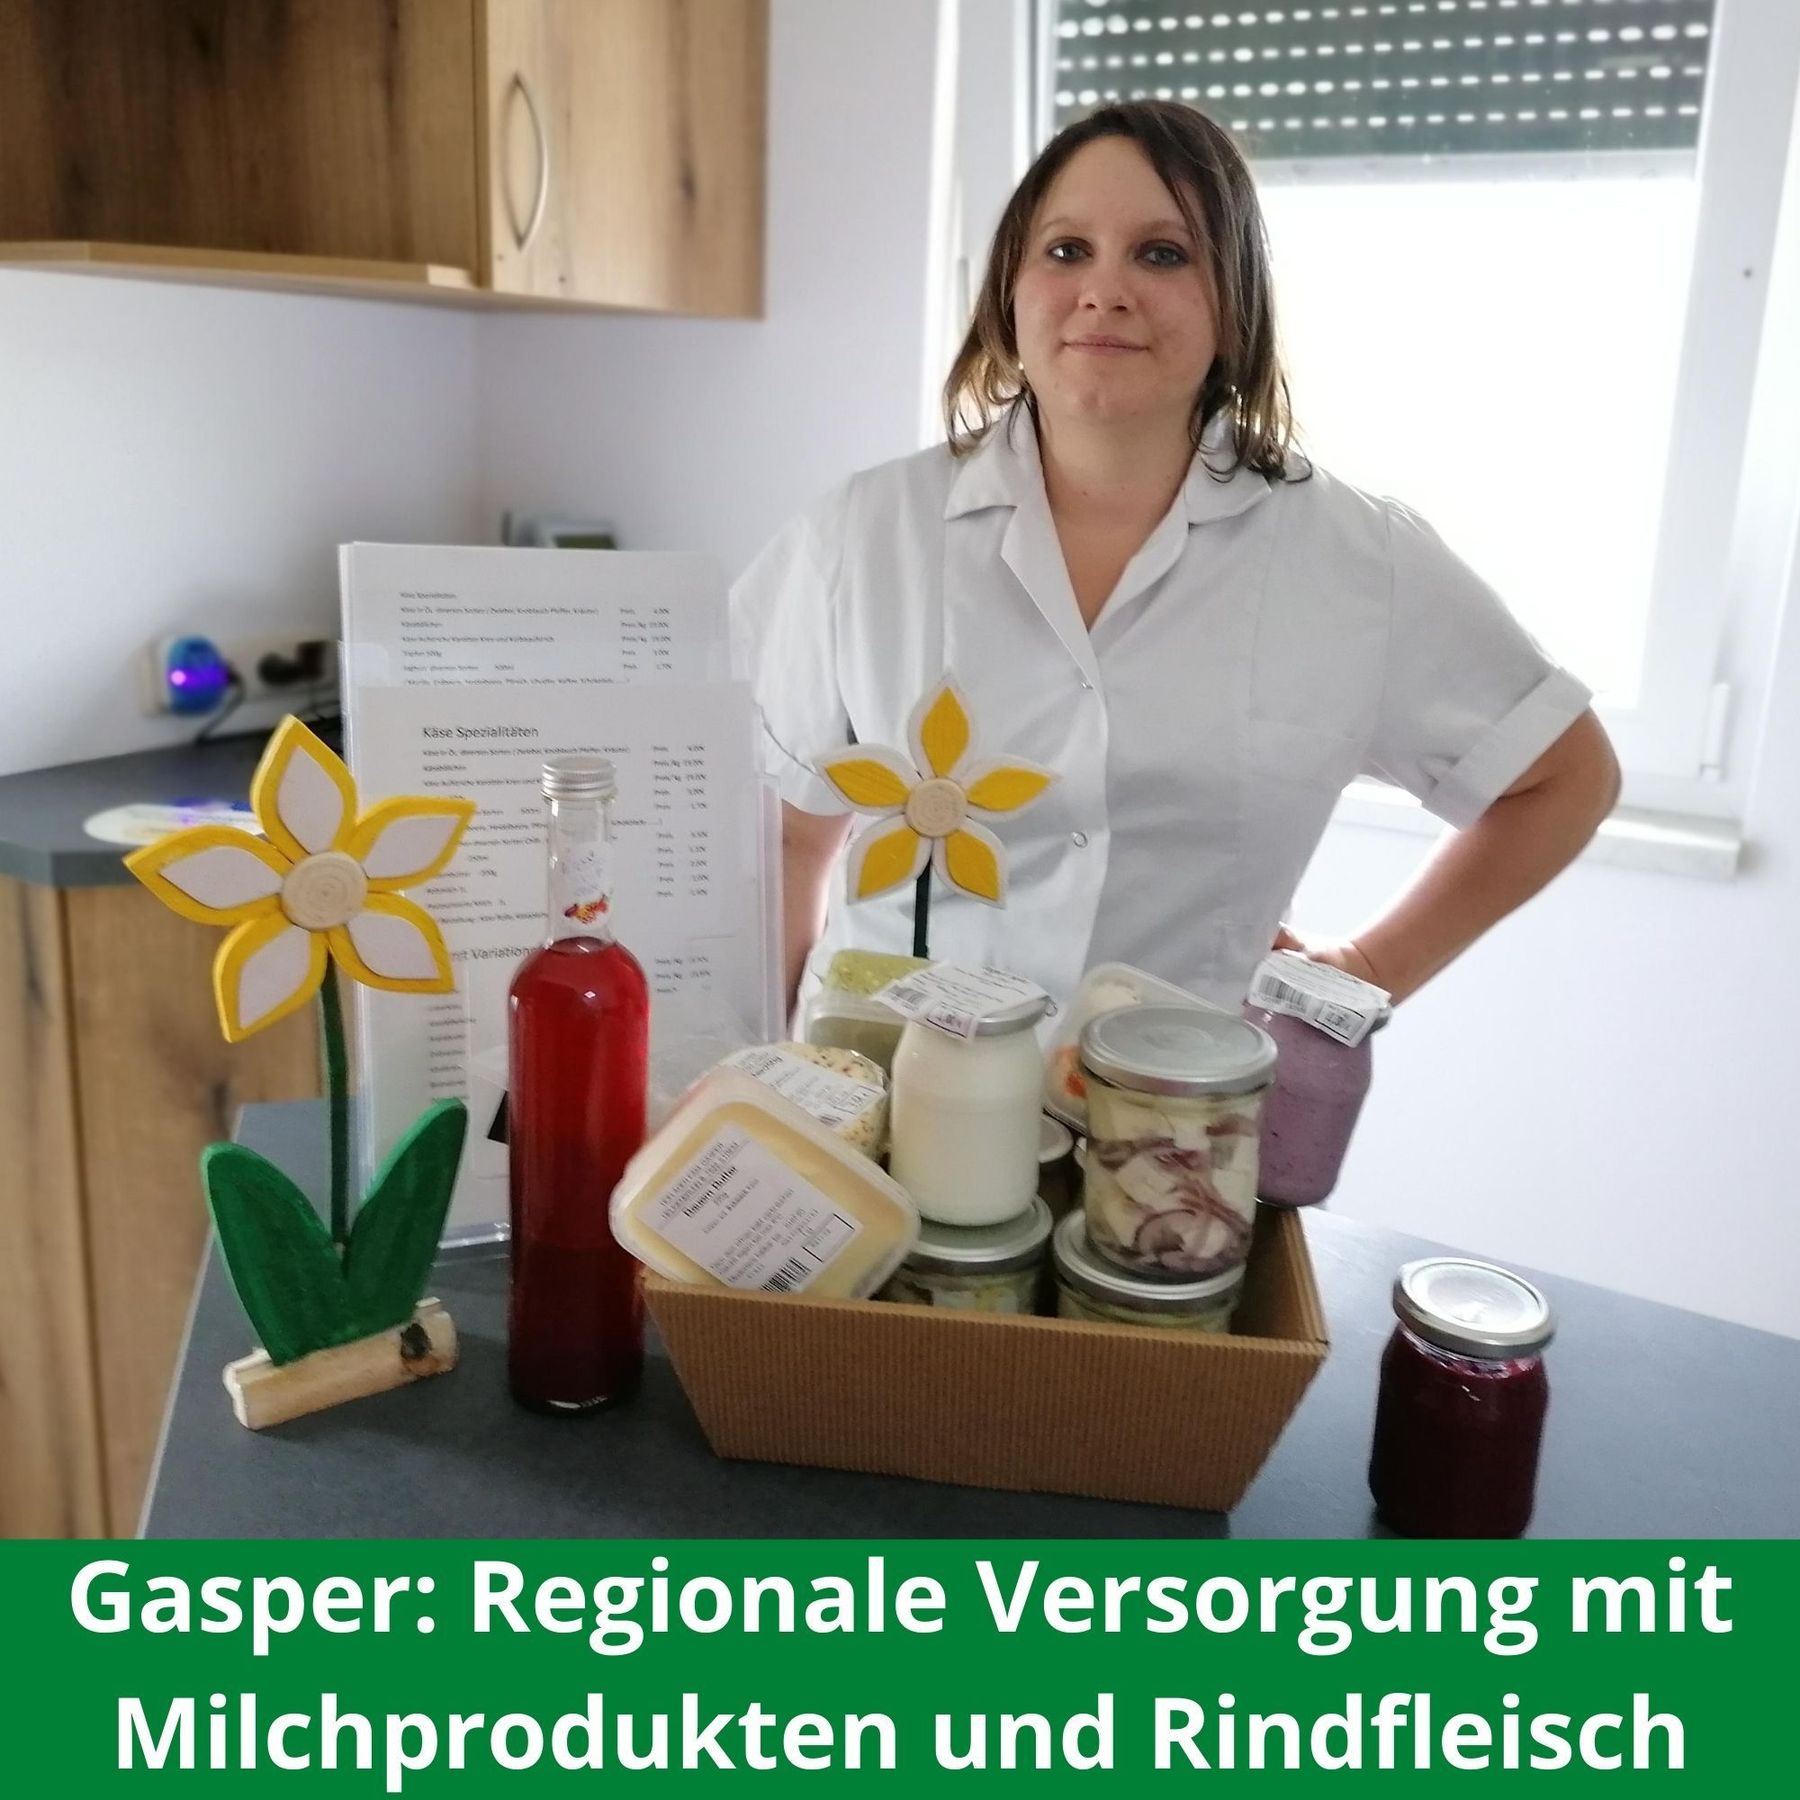 gasper-regionale versorgung mit milchprodukten und rindfleisch-lk burgenland-innovationspreis burgenland isst innovativ.jpg